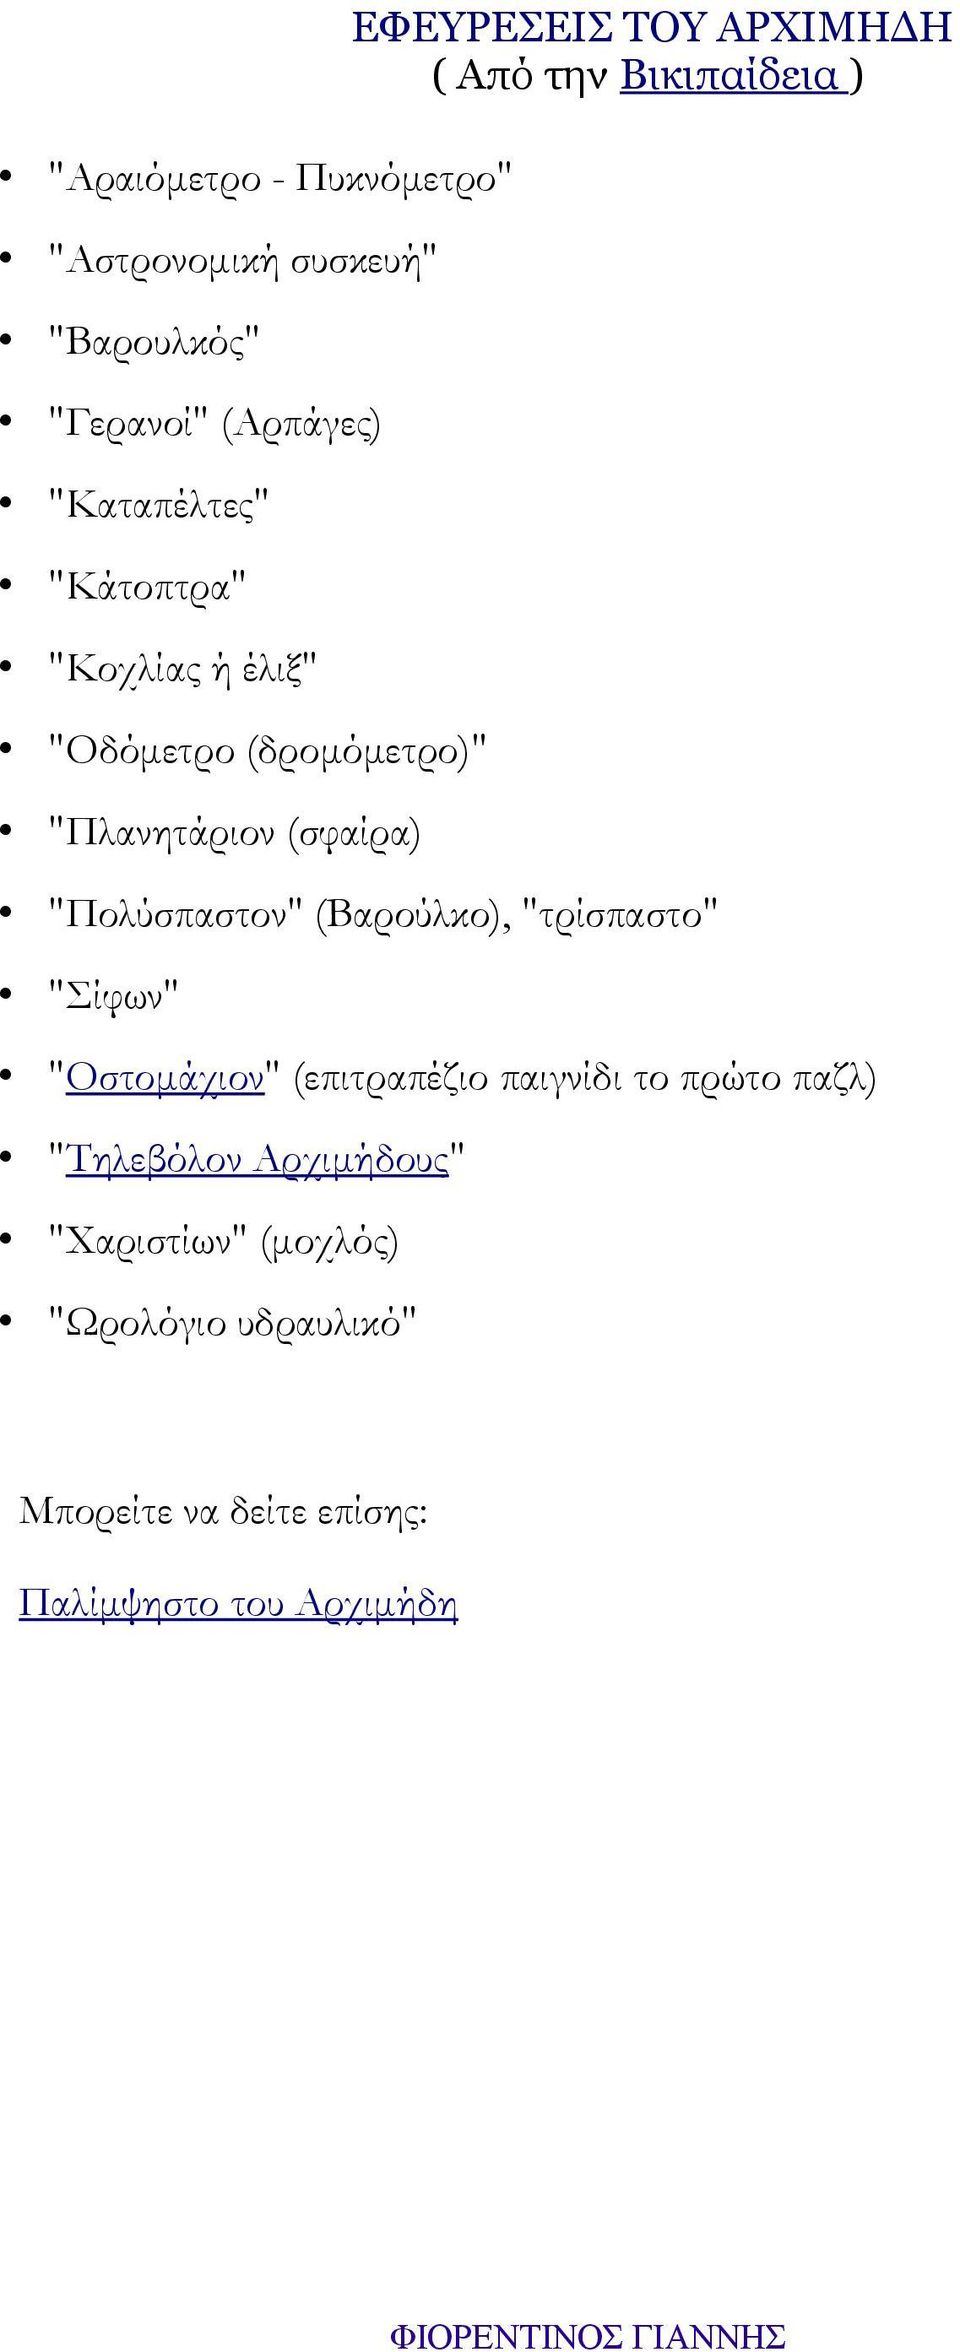 Βικιπαίδεια ) "Πολύσπαστον" (Βαρούλκο), "τρίσπαστο" "Σίφων" "Οστομάχιον" (επιτραπέζιο παιγνίδι το πρώτο